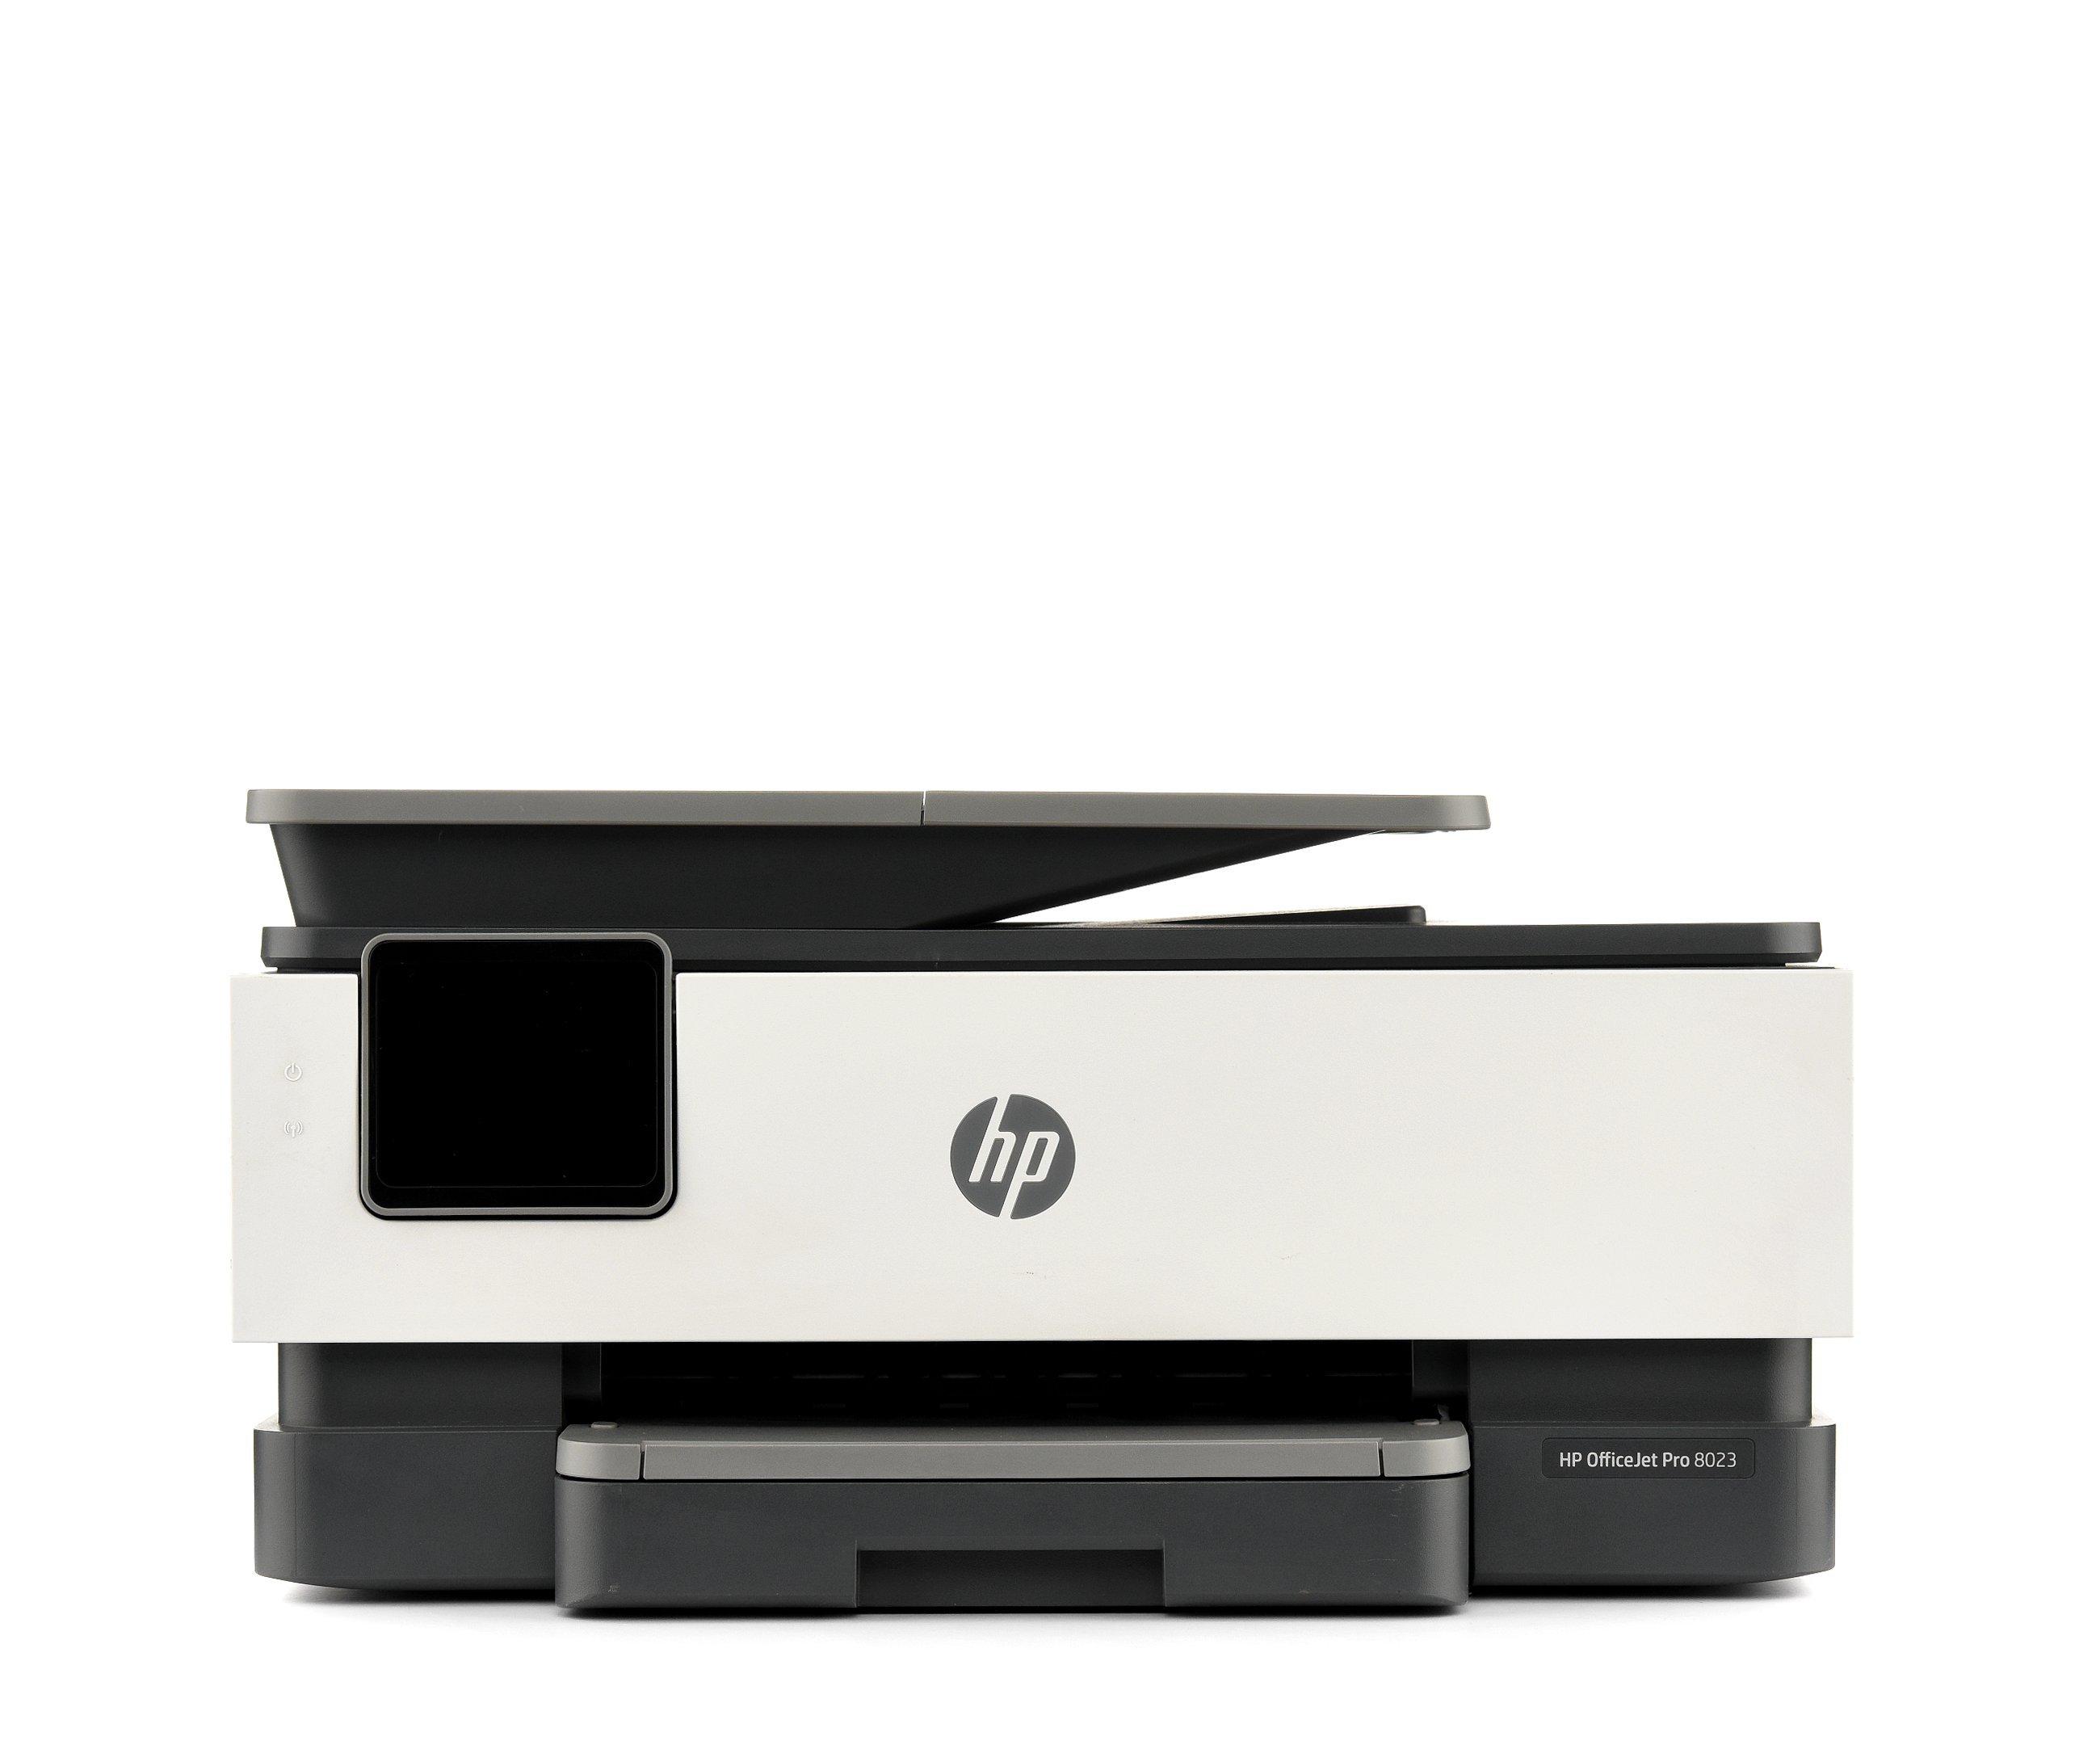 3A Informatique - 3A informatique vous propose l'imprimante HP tout-en-un  OFFICE PRO 8023, intelligente, simple et productive au prix de 199€  Attention !! seulement 10 pièces disponibles en magasin..  Caractéristiques : 